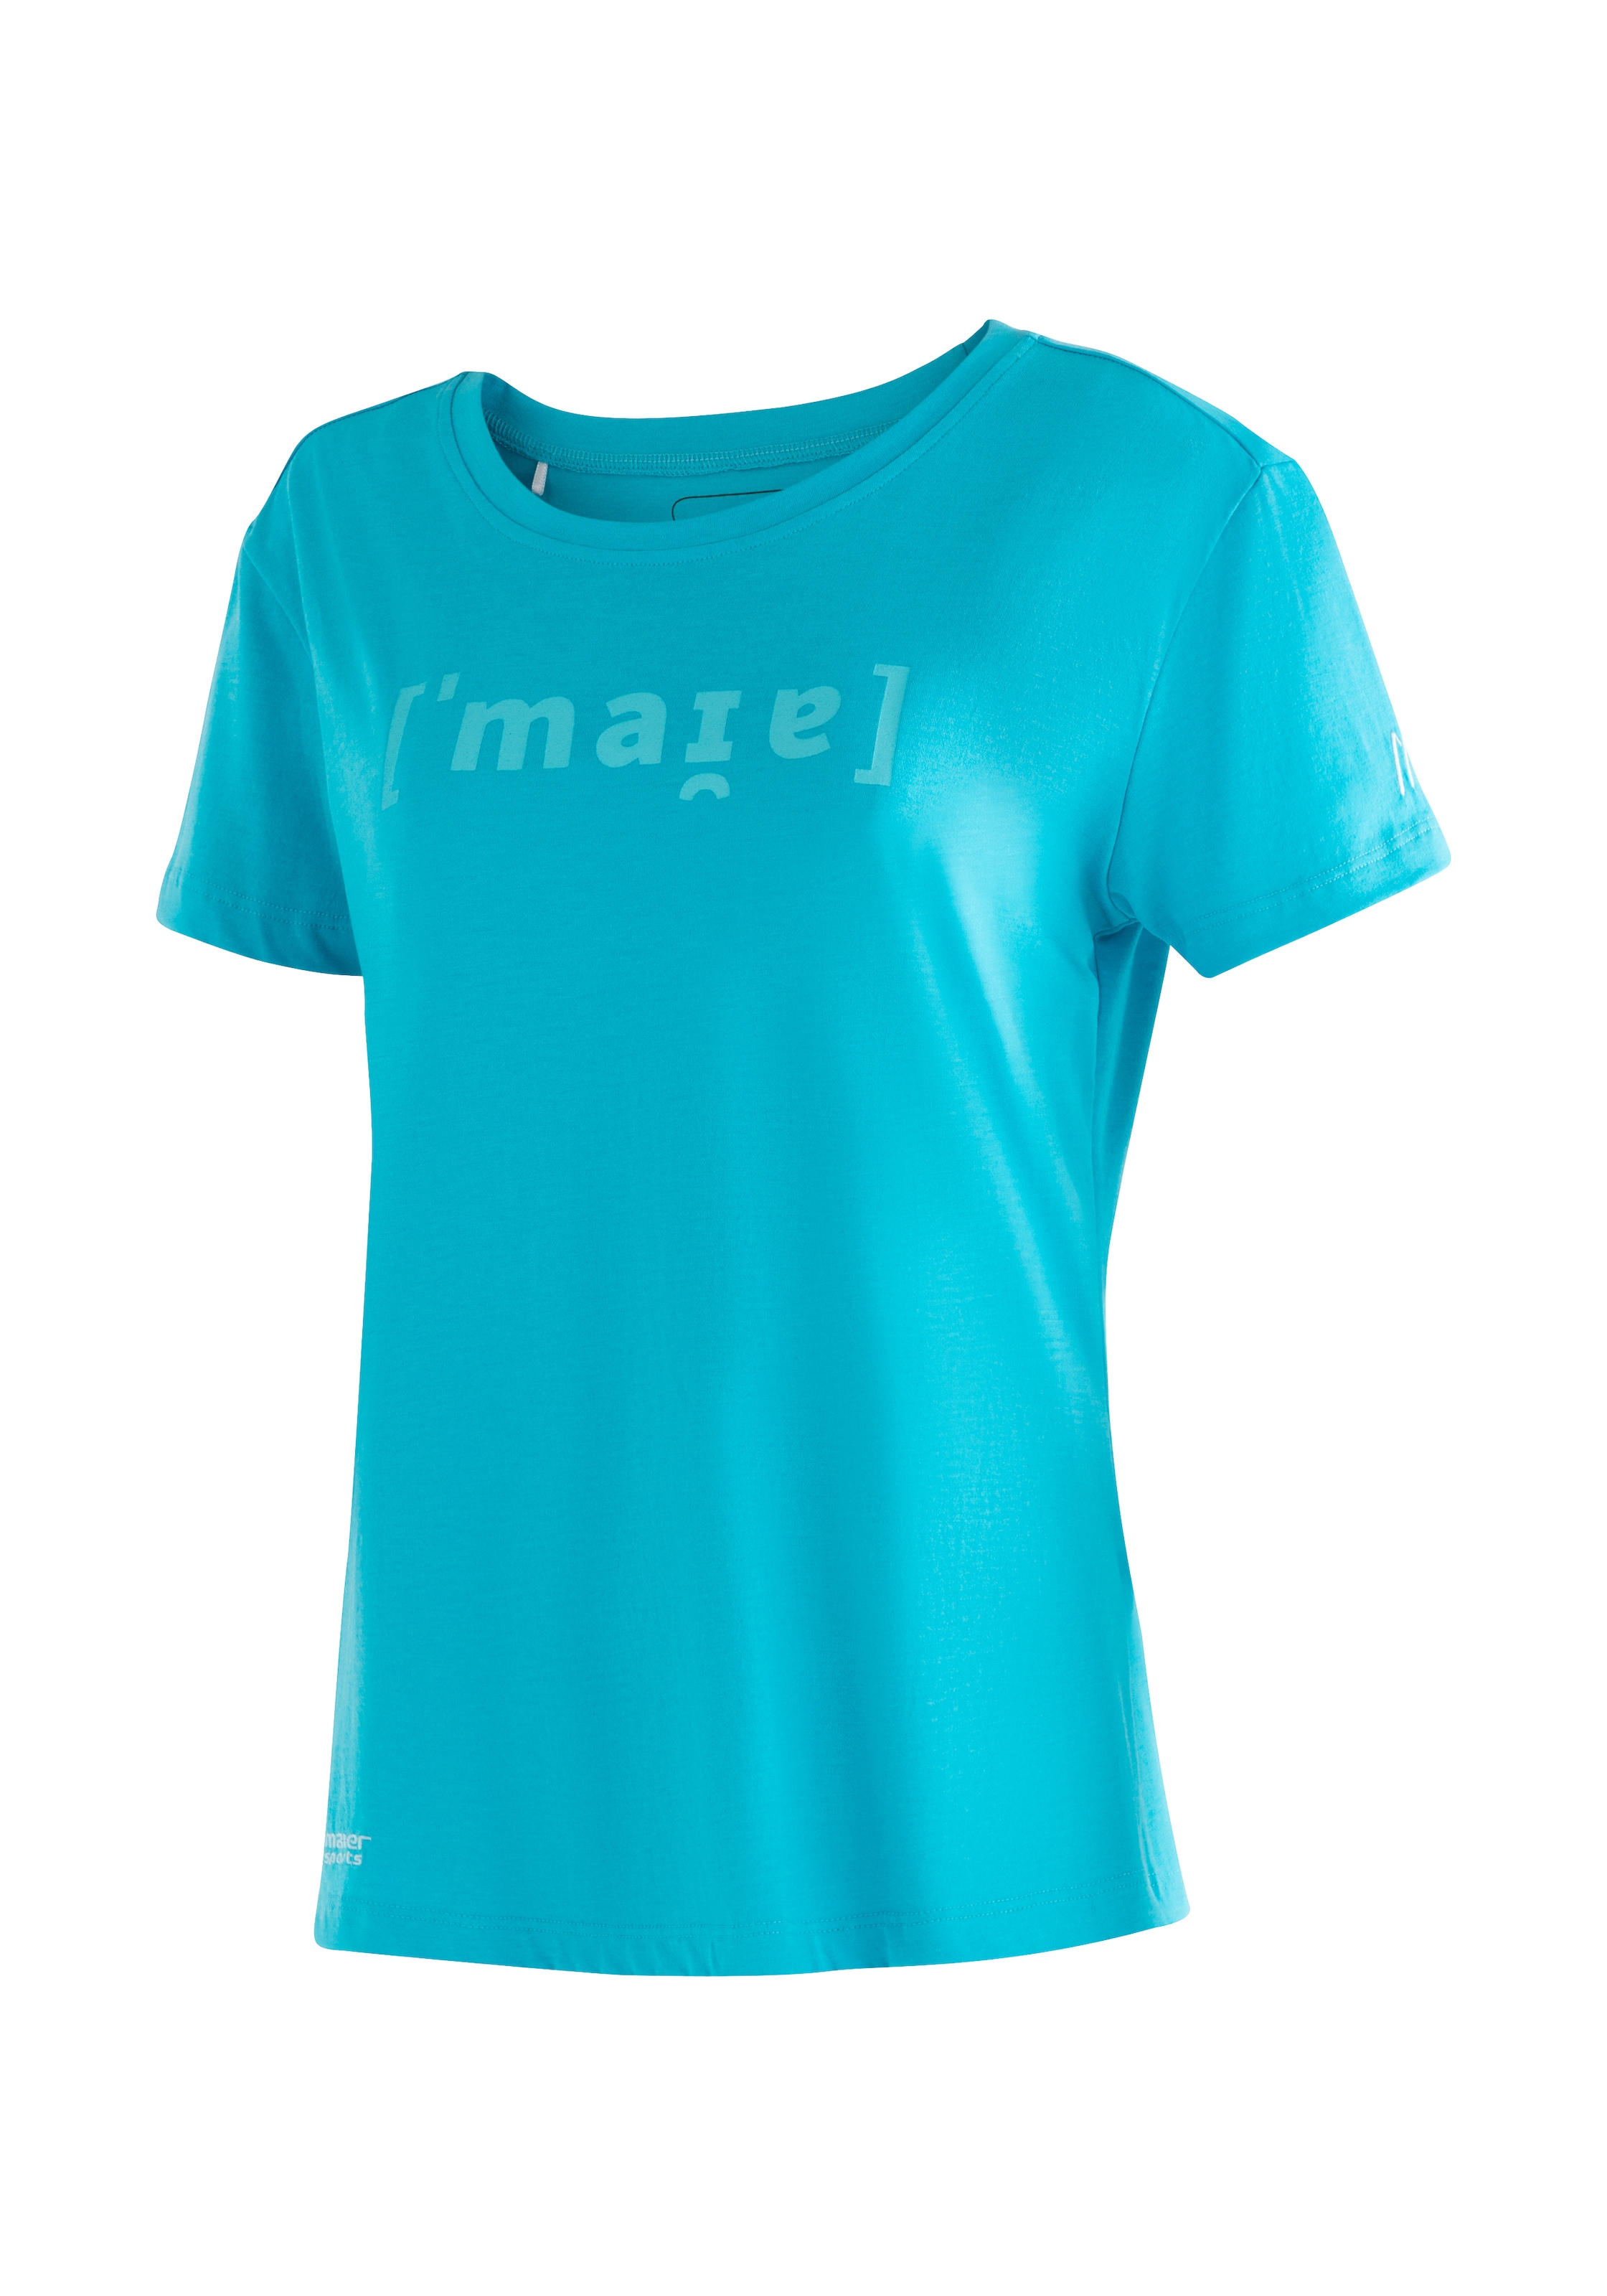 Maier Sports T-Shirt mit W«, Tee Kurzarmshirt Freizeit »Phonetic Print für Wandern Damen kaufen und